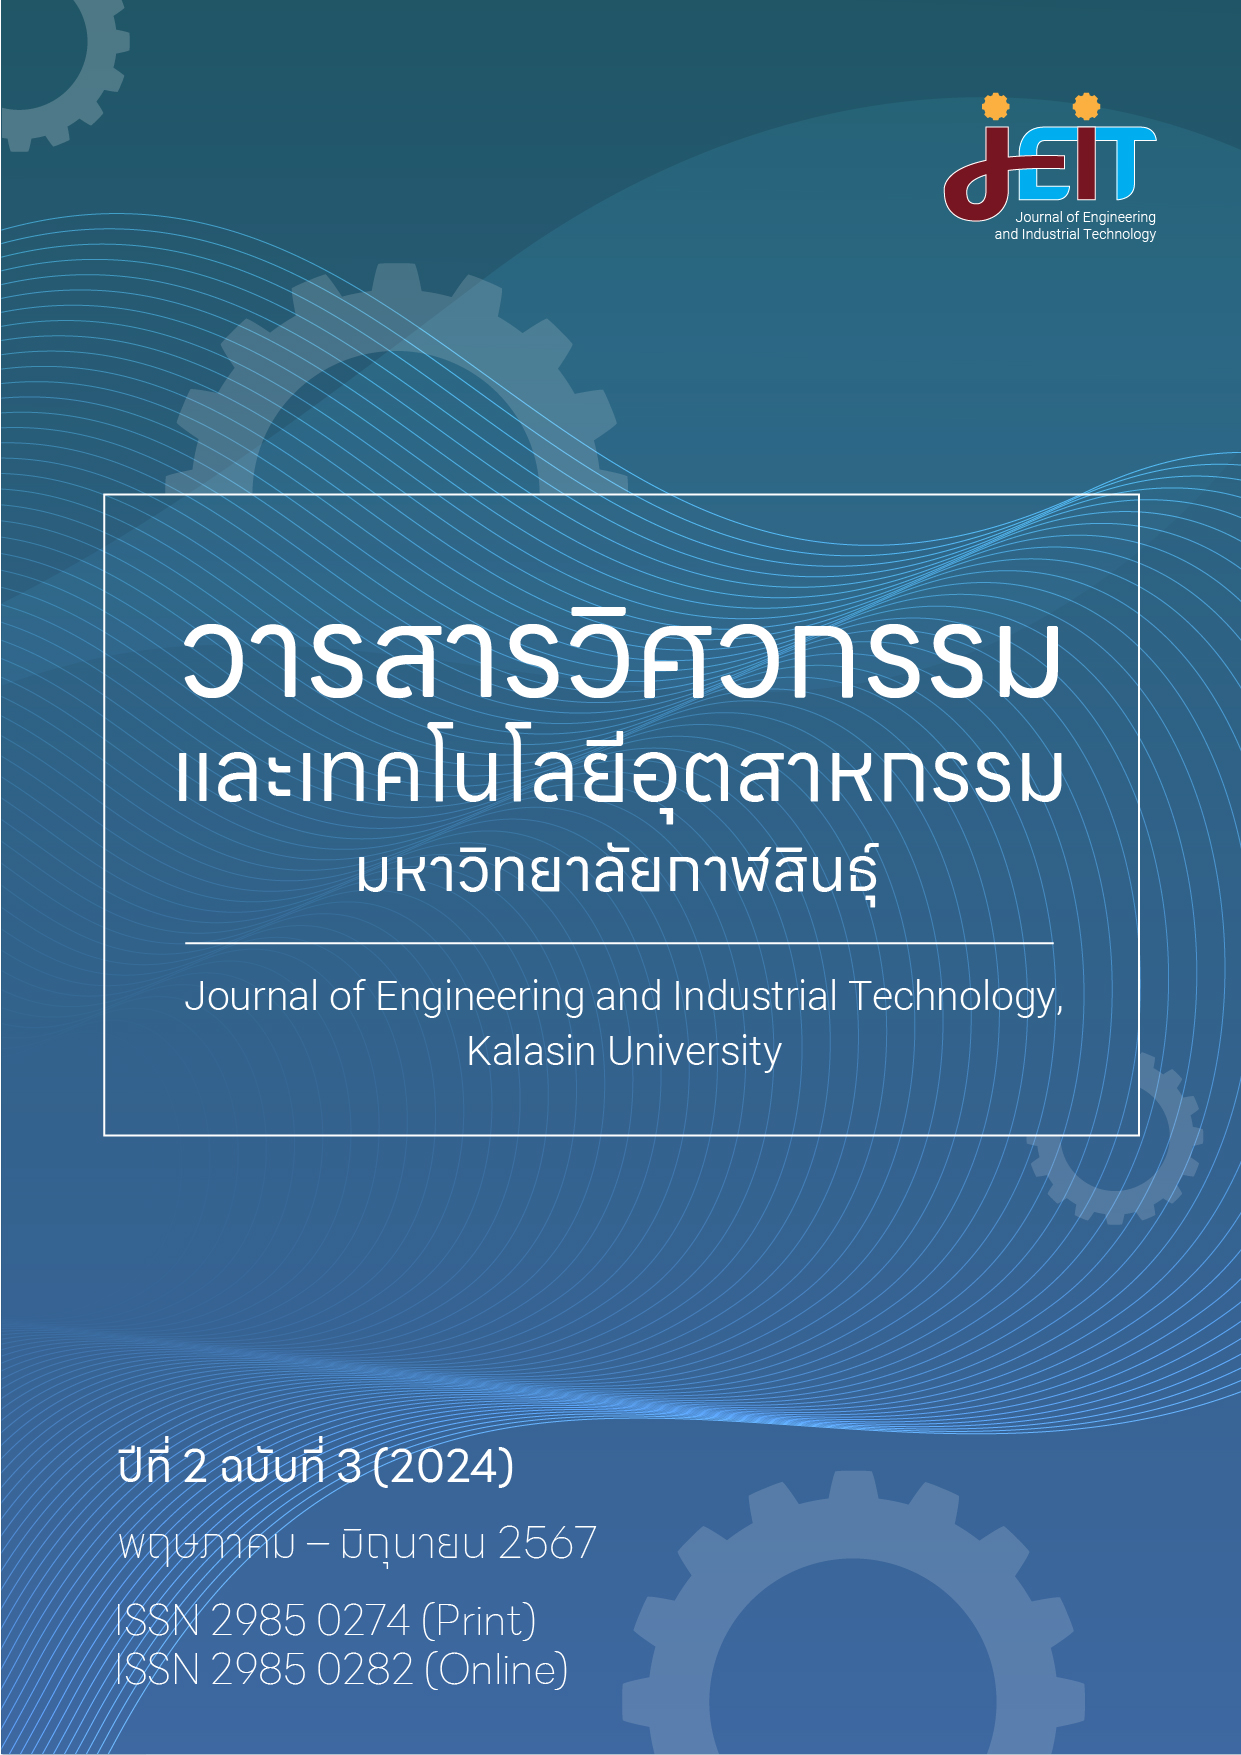 					ดู ปีที่ 2 ฉบับที่ 3 (2024): วารสารวิศวกรรมและเทคโนโลยีอุตสาหกรรม มหาวิทยาลัยกาฬสินธุ์ ปีที่ 2 ฉบับที่ 3 (พฤษภาคม - มิถุนายน 2567)
				